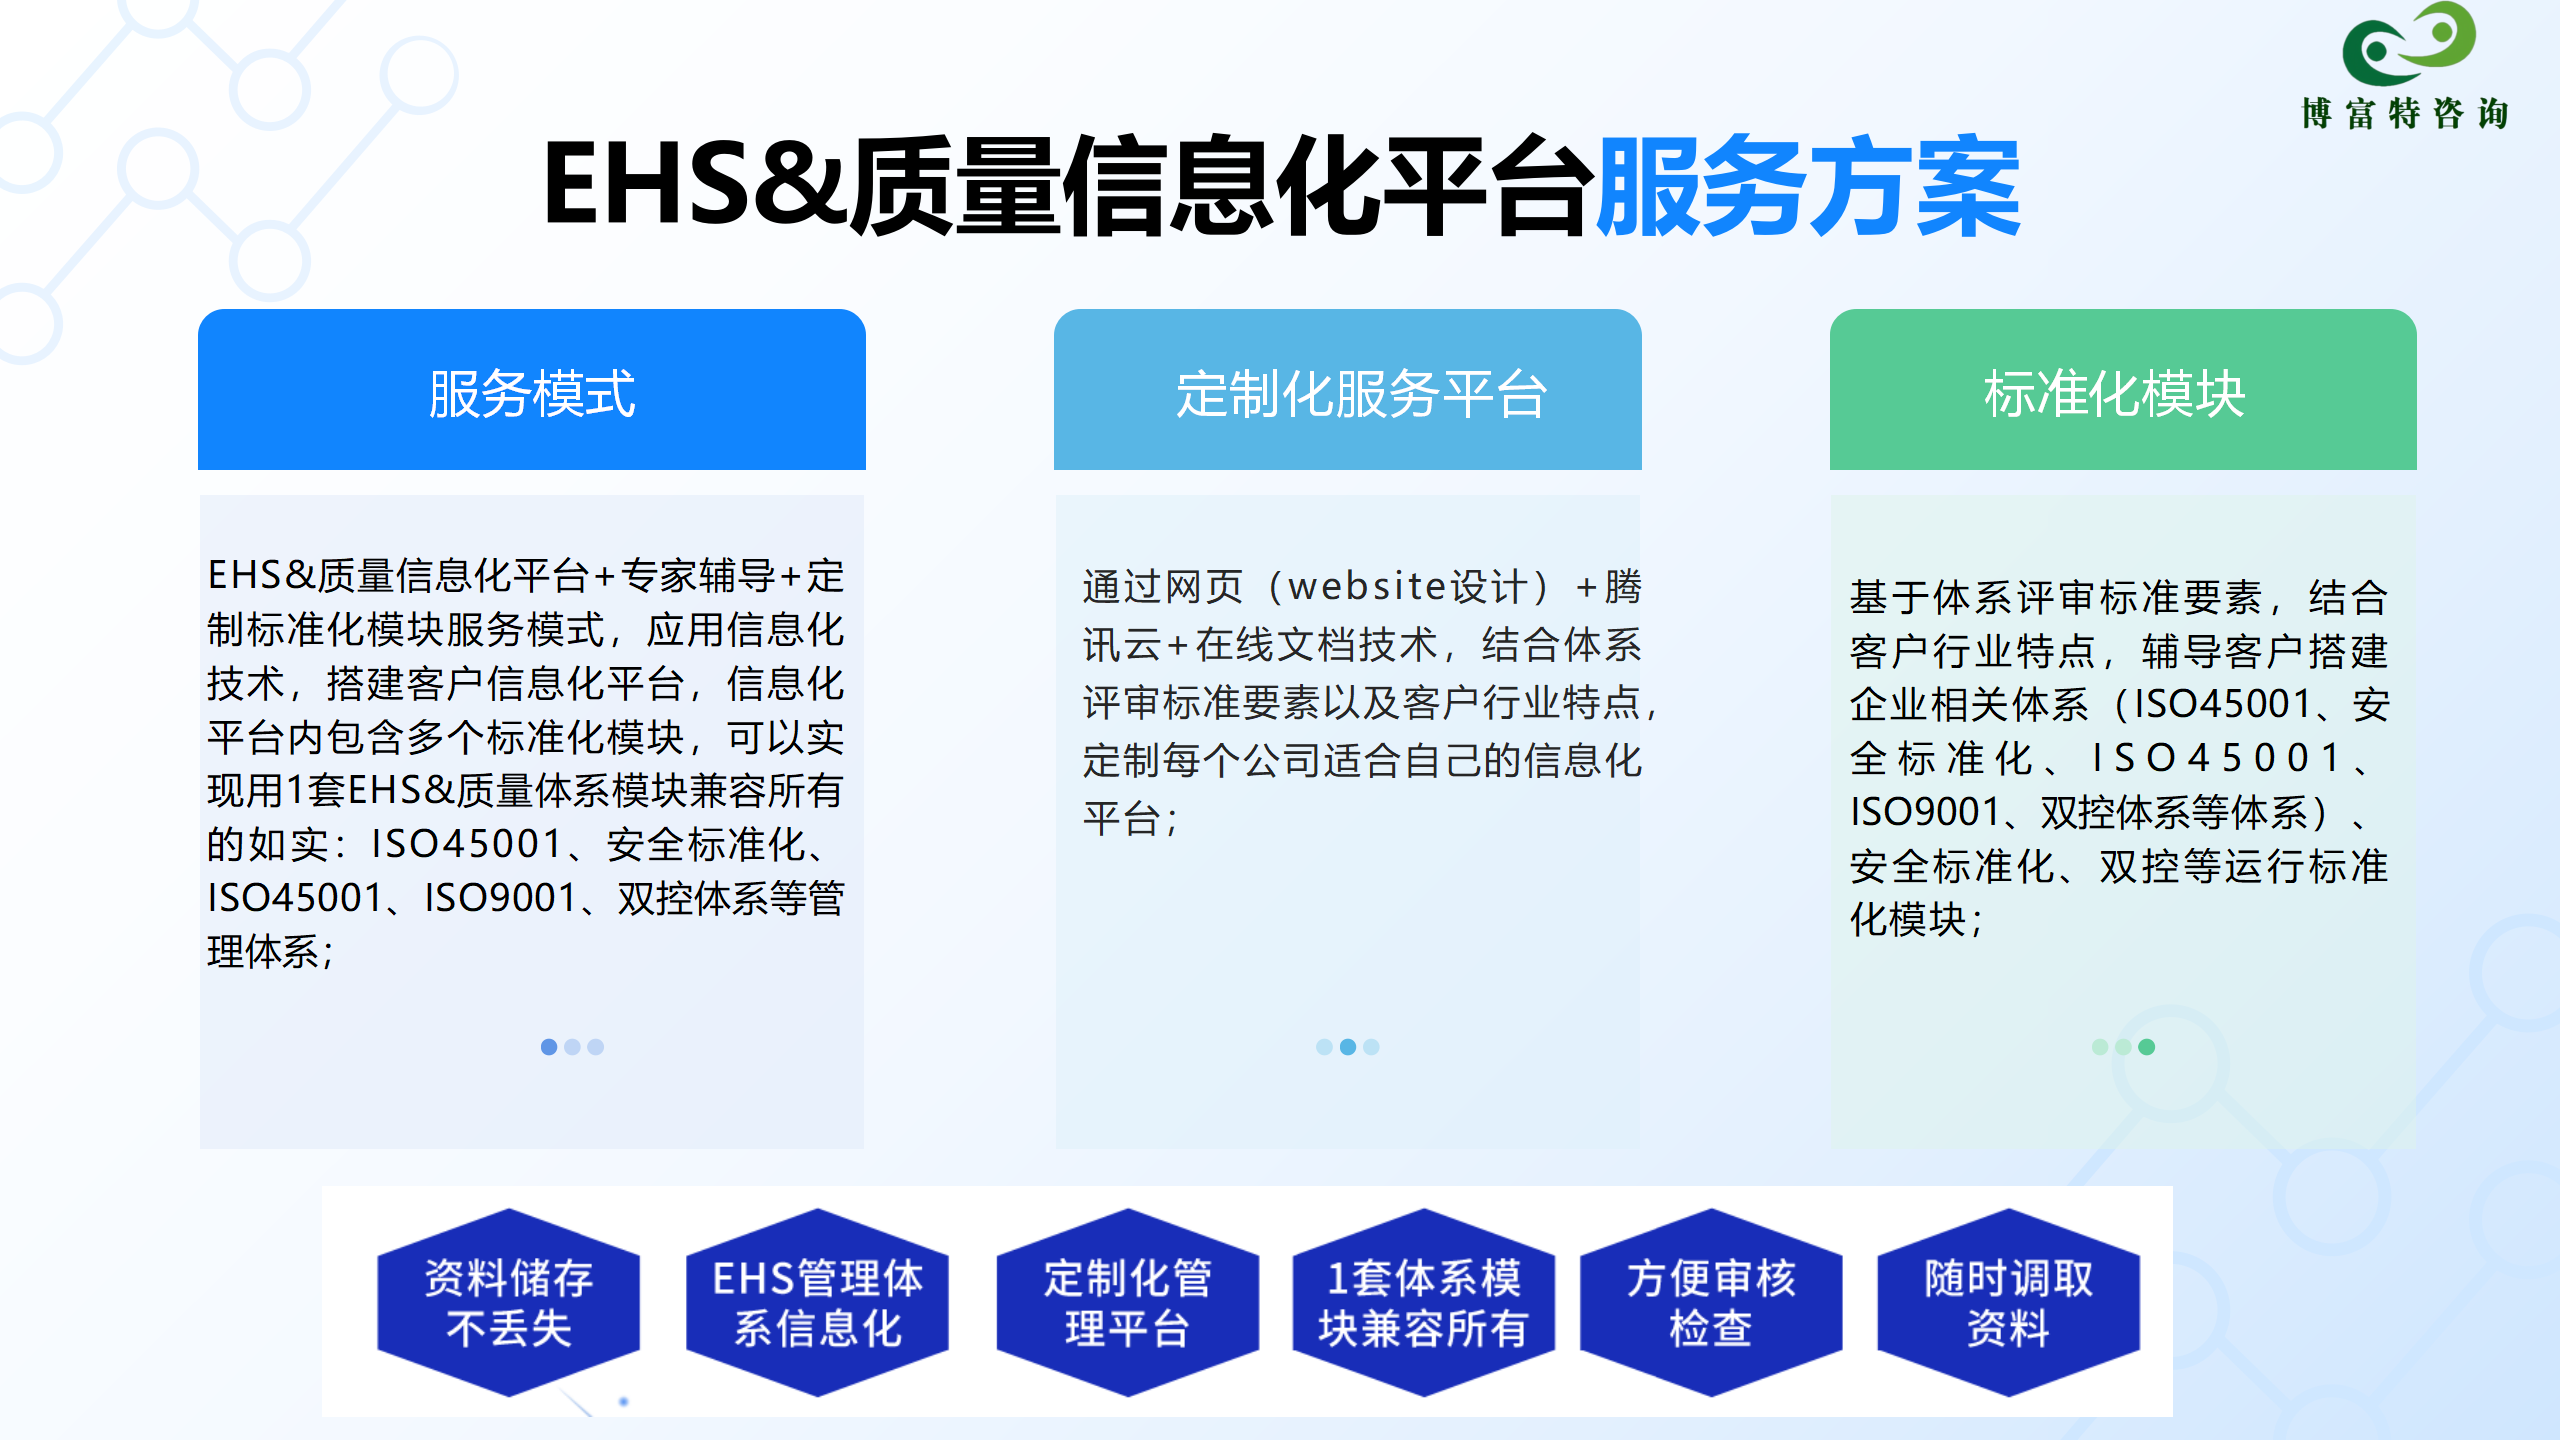 EHS&质量信息化平台业务介绍_01.png